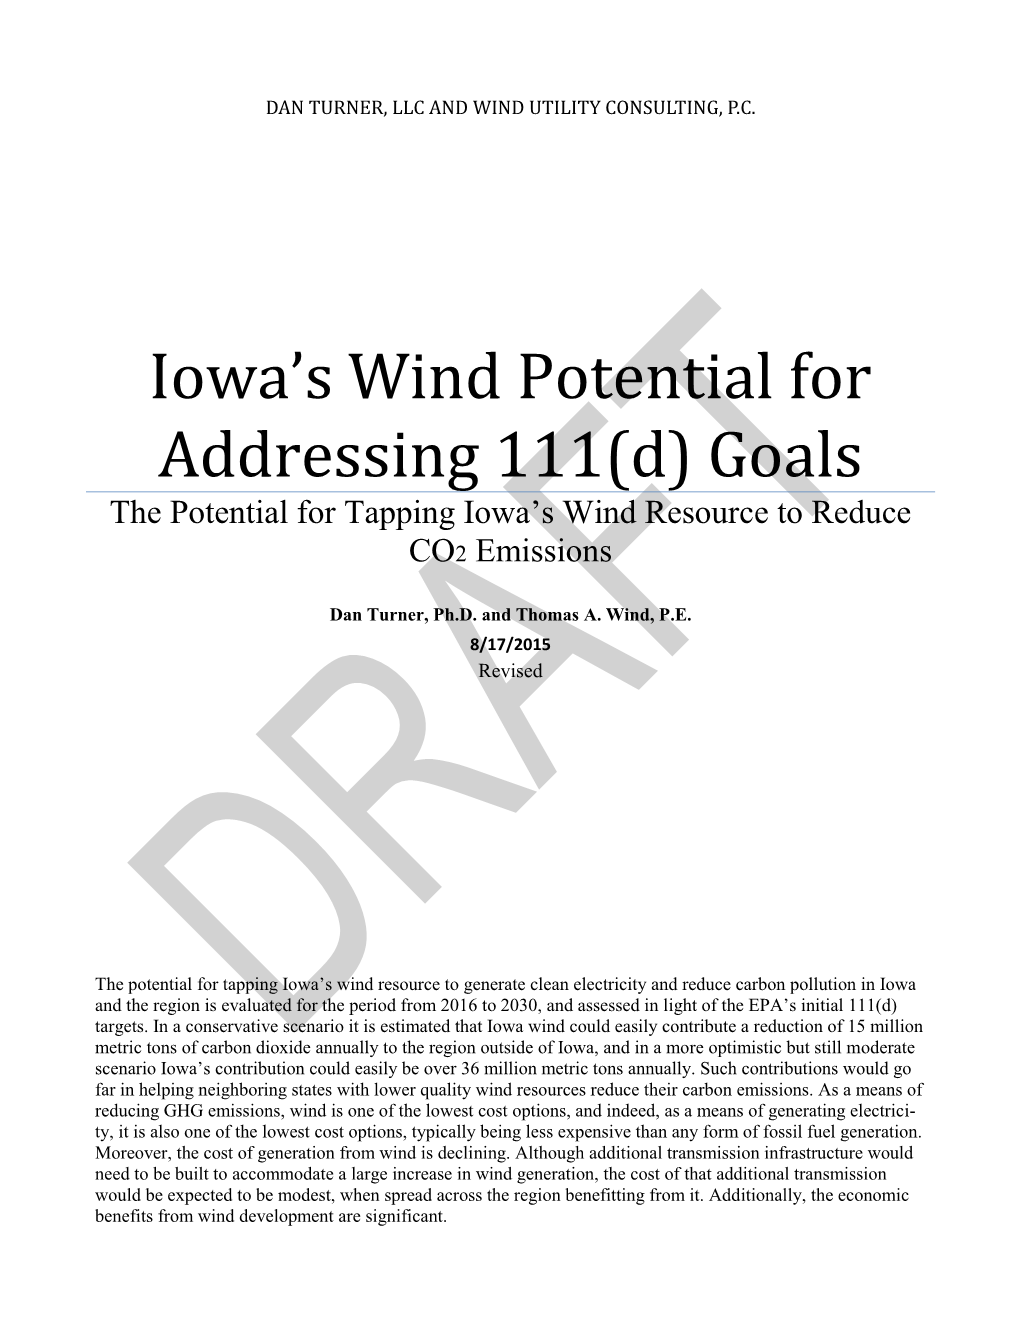 Iowa's Wind Potential